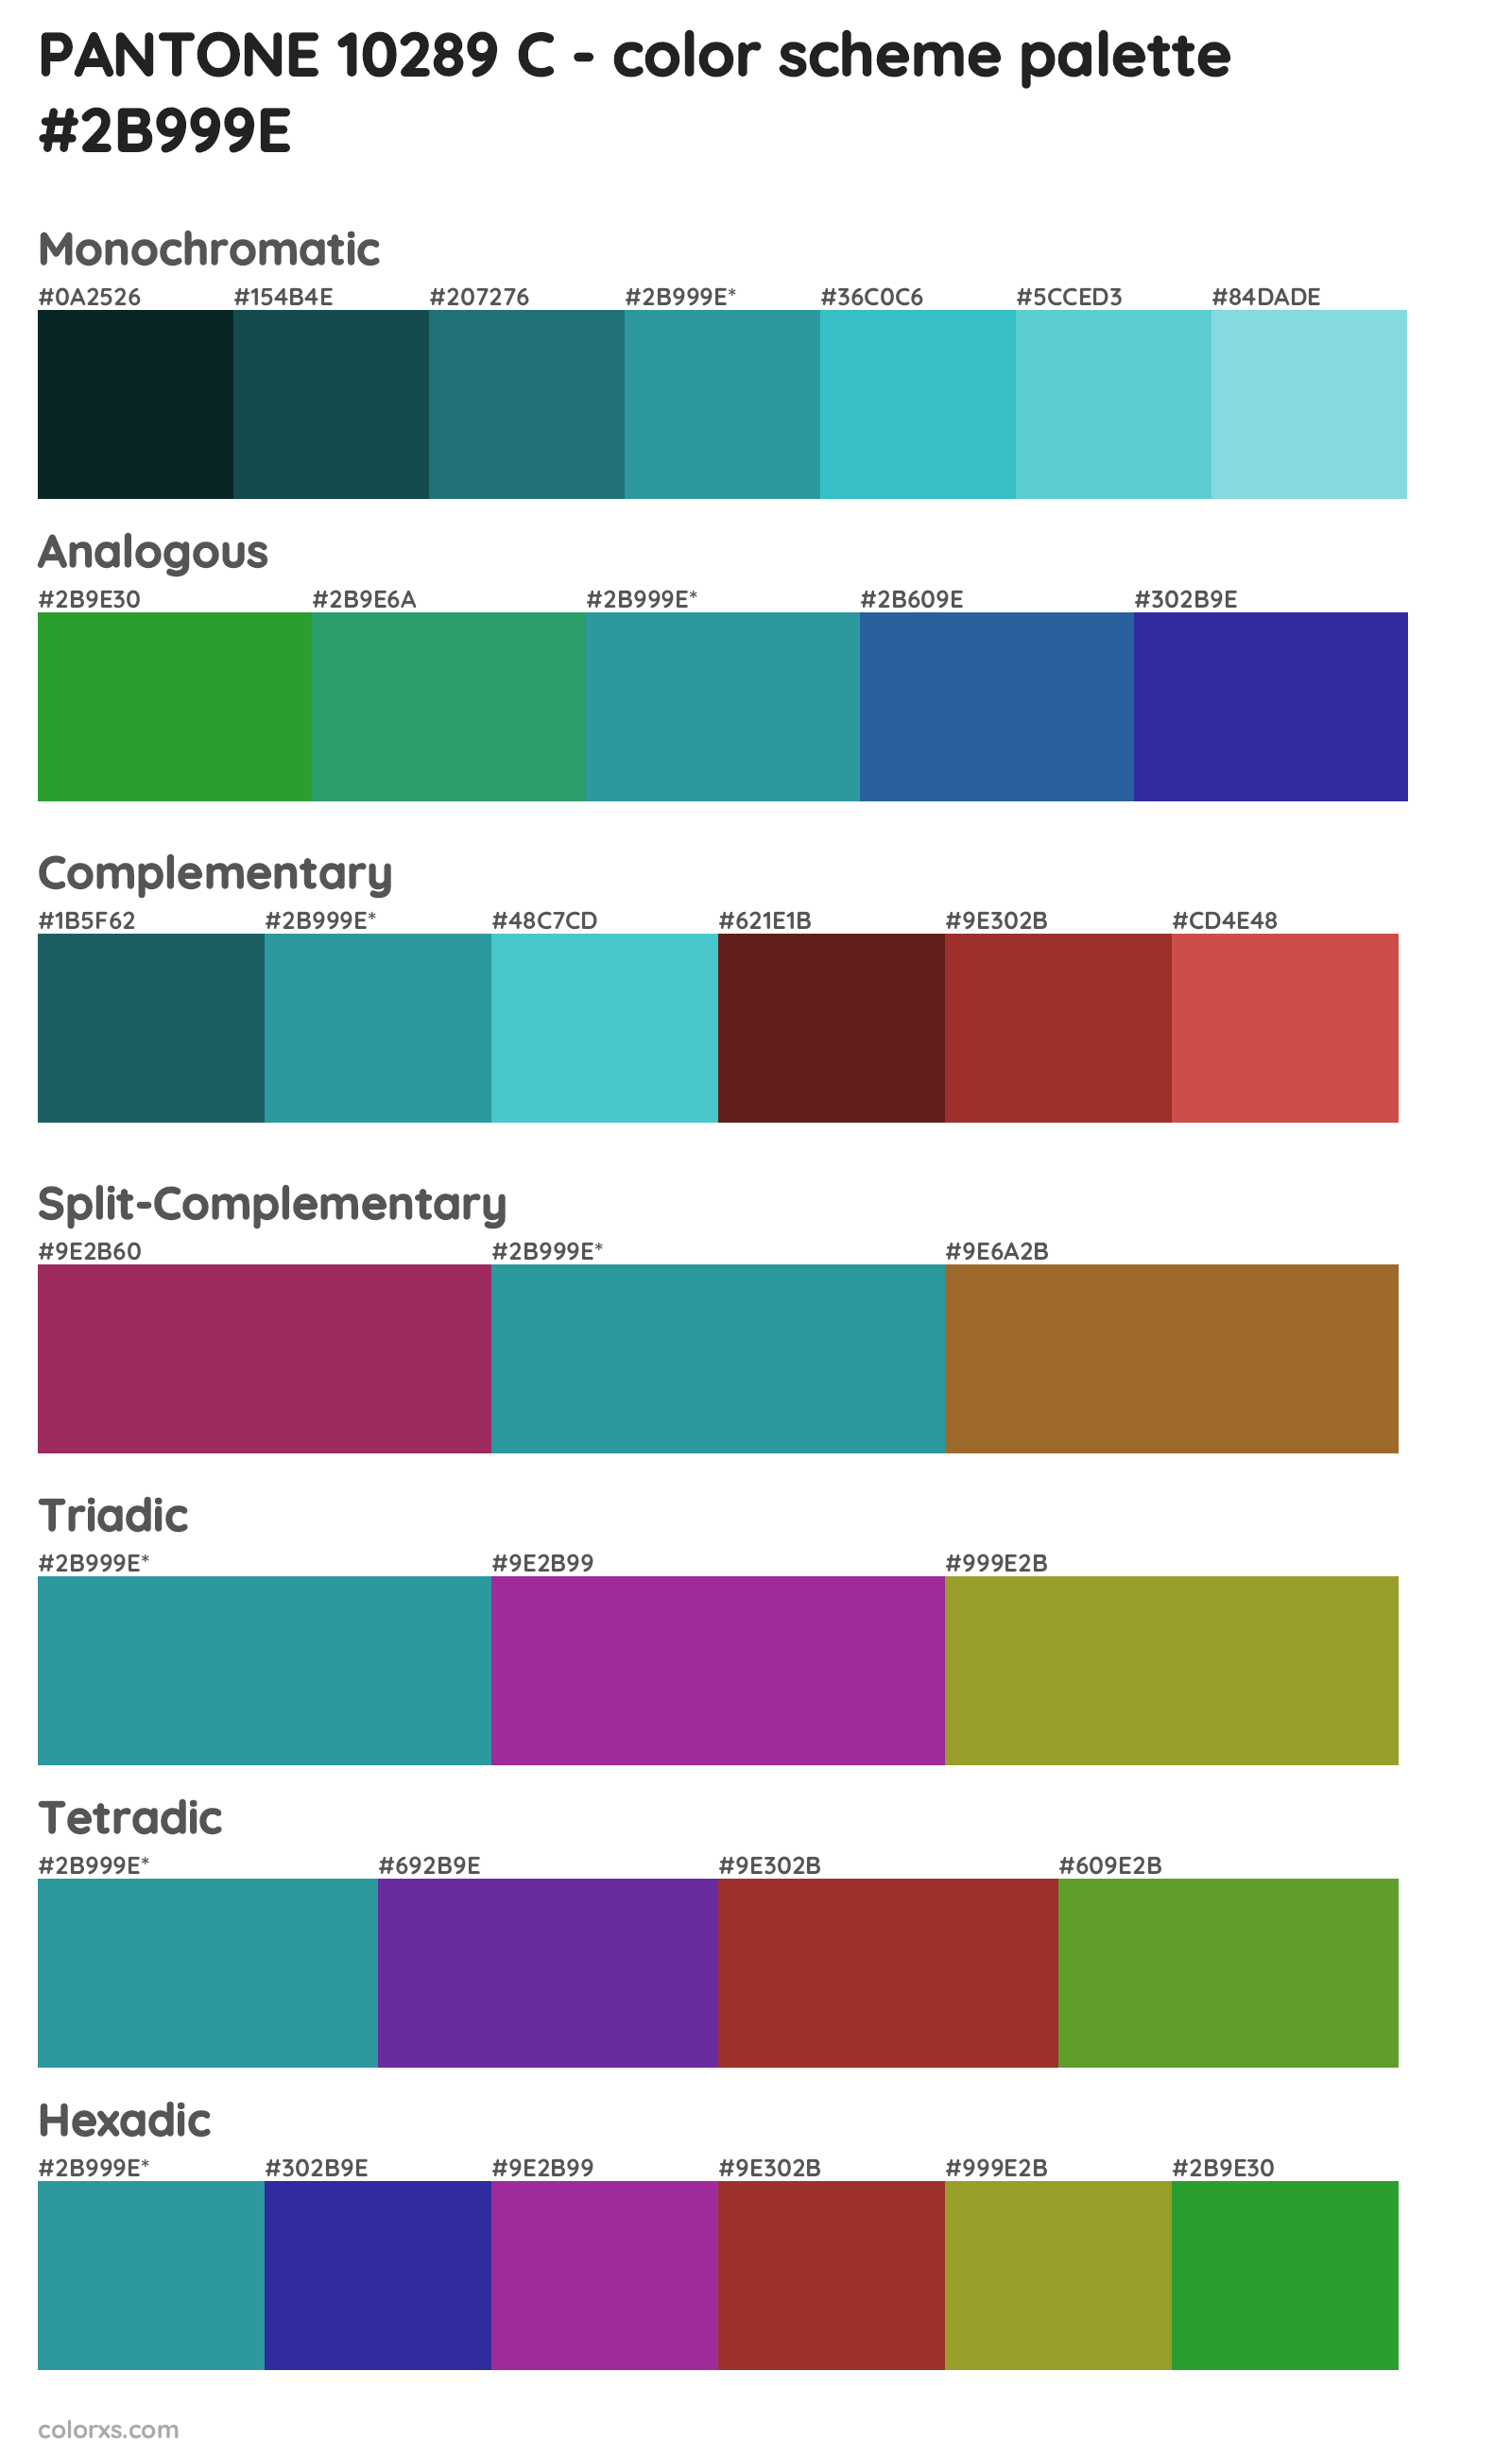 PANTONE 10289 C Color Scheme Palettes